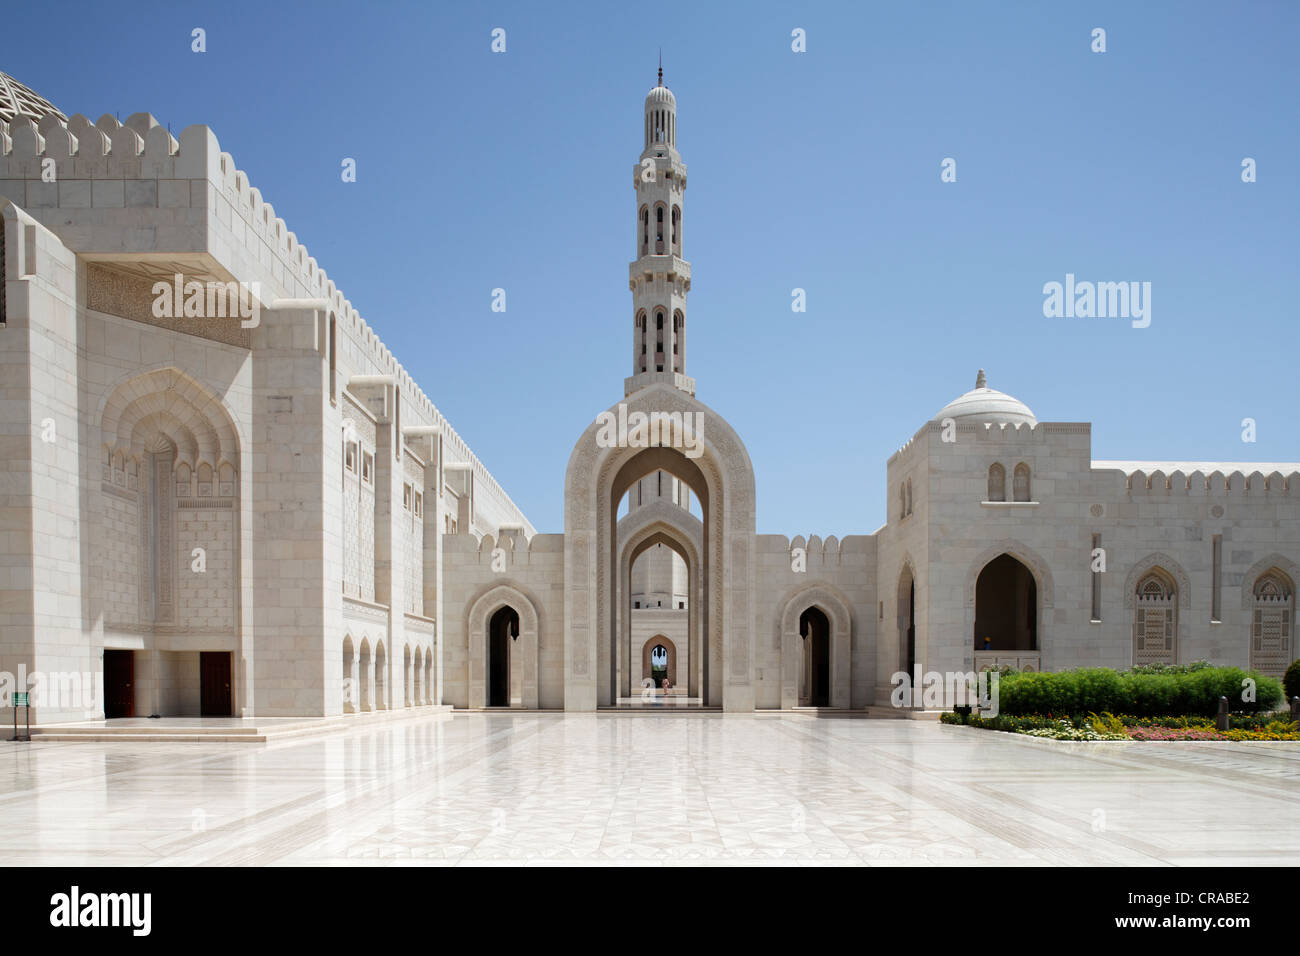 Cuadrado con arco apuntado, GATE, Minarete, la Gran Mezquita Sultan Qaboos, Muscat capital, Sultanato de Omán, estados del golfo Foto de stock